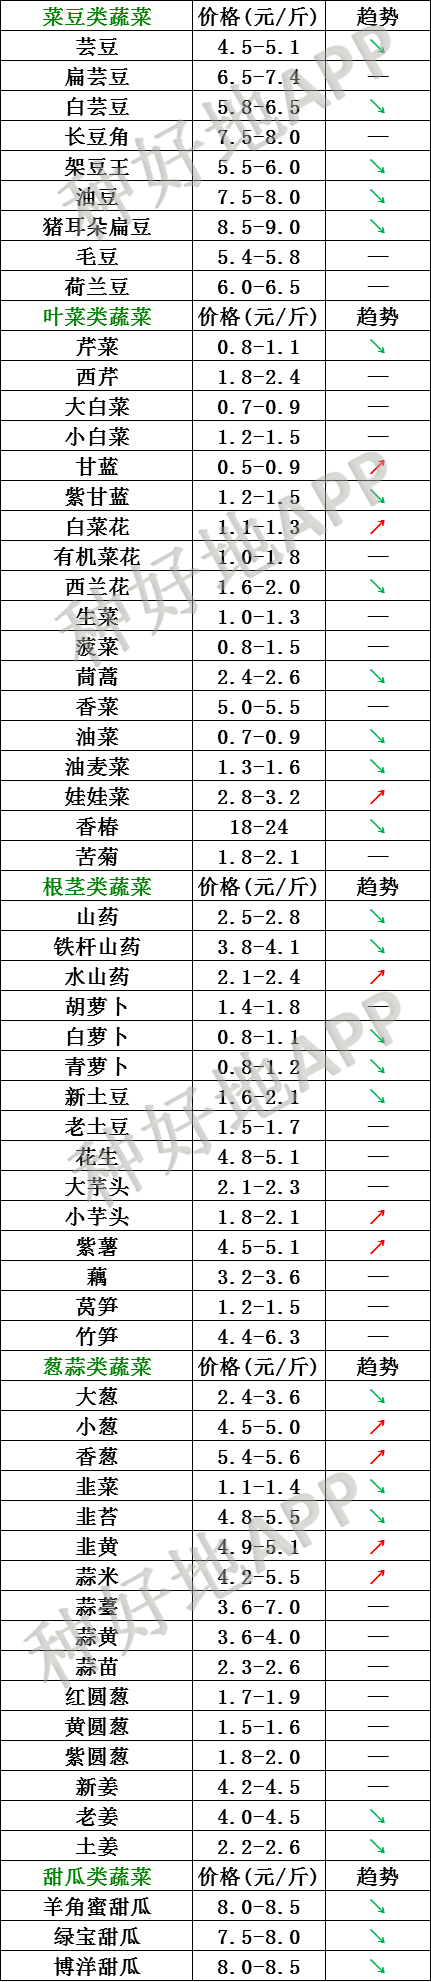 2021年2月27日北京新发地 山东寿光蔬菜价格行情、云南,河北石家庄蔬菜价格一览表